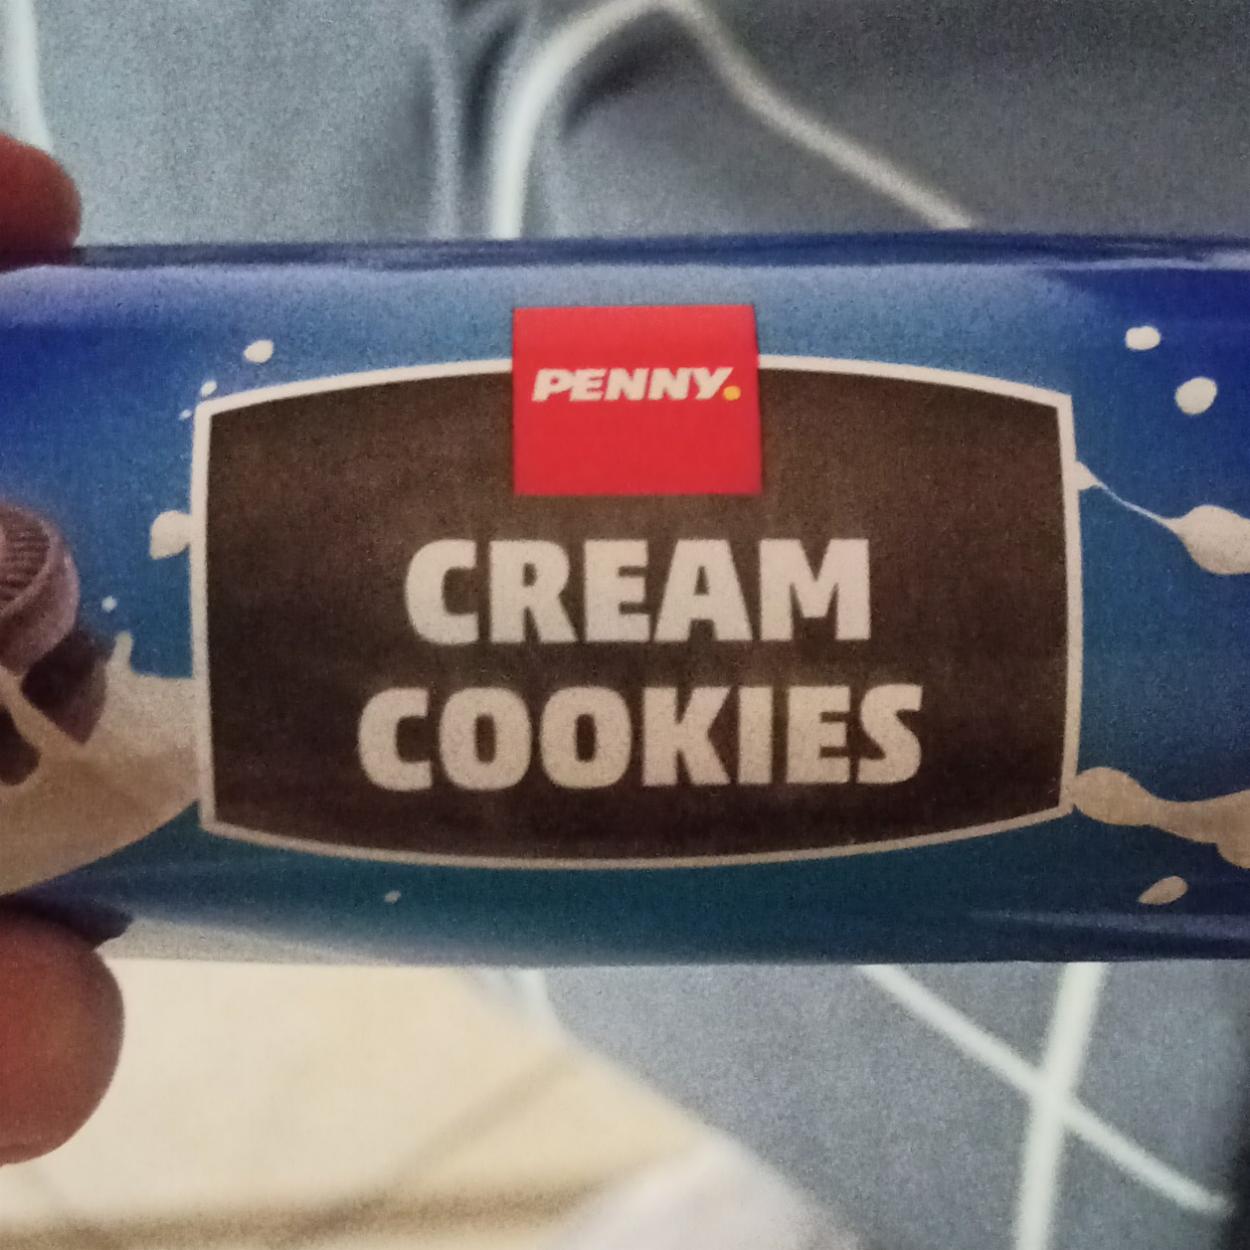 Fotografie - Cream cookies Penny